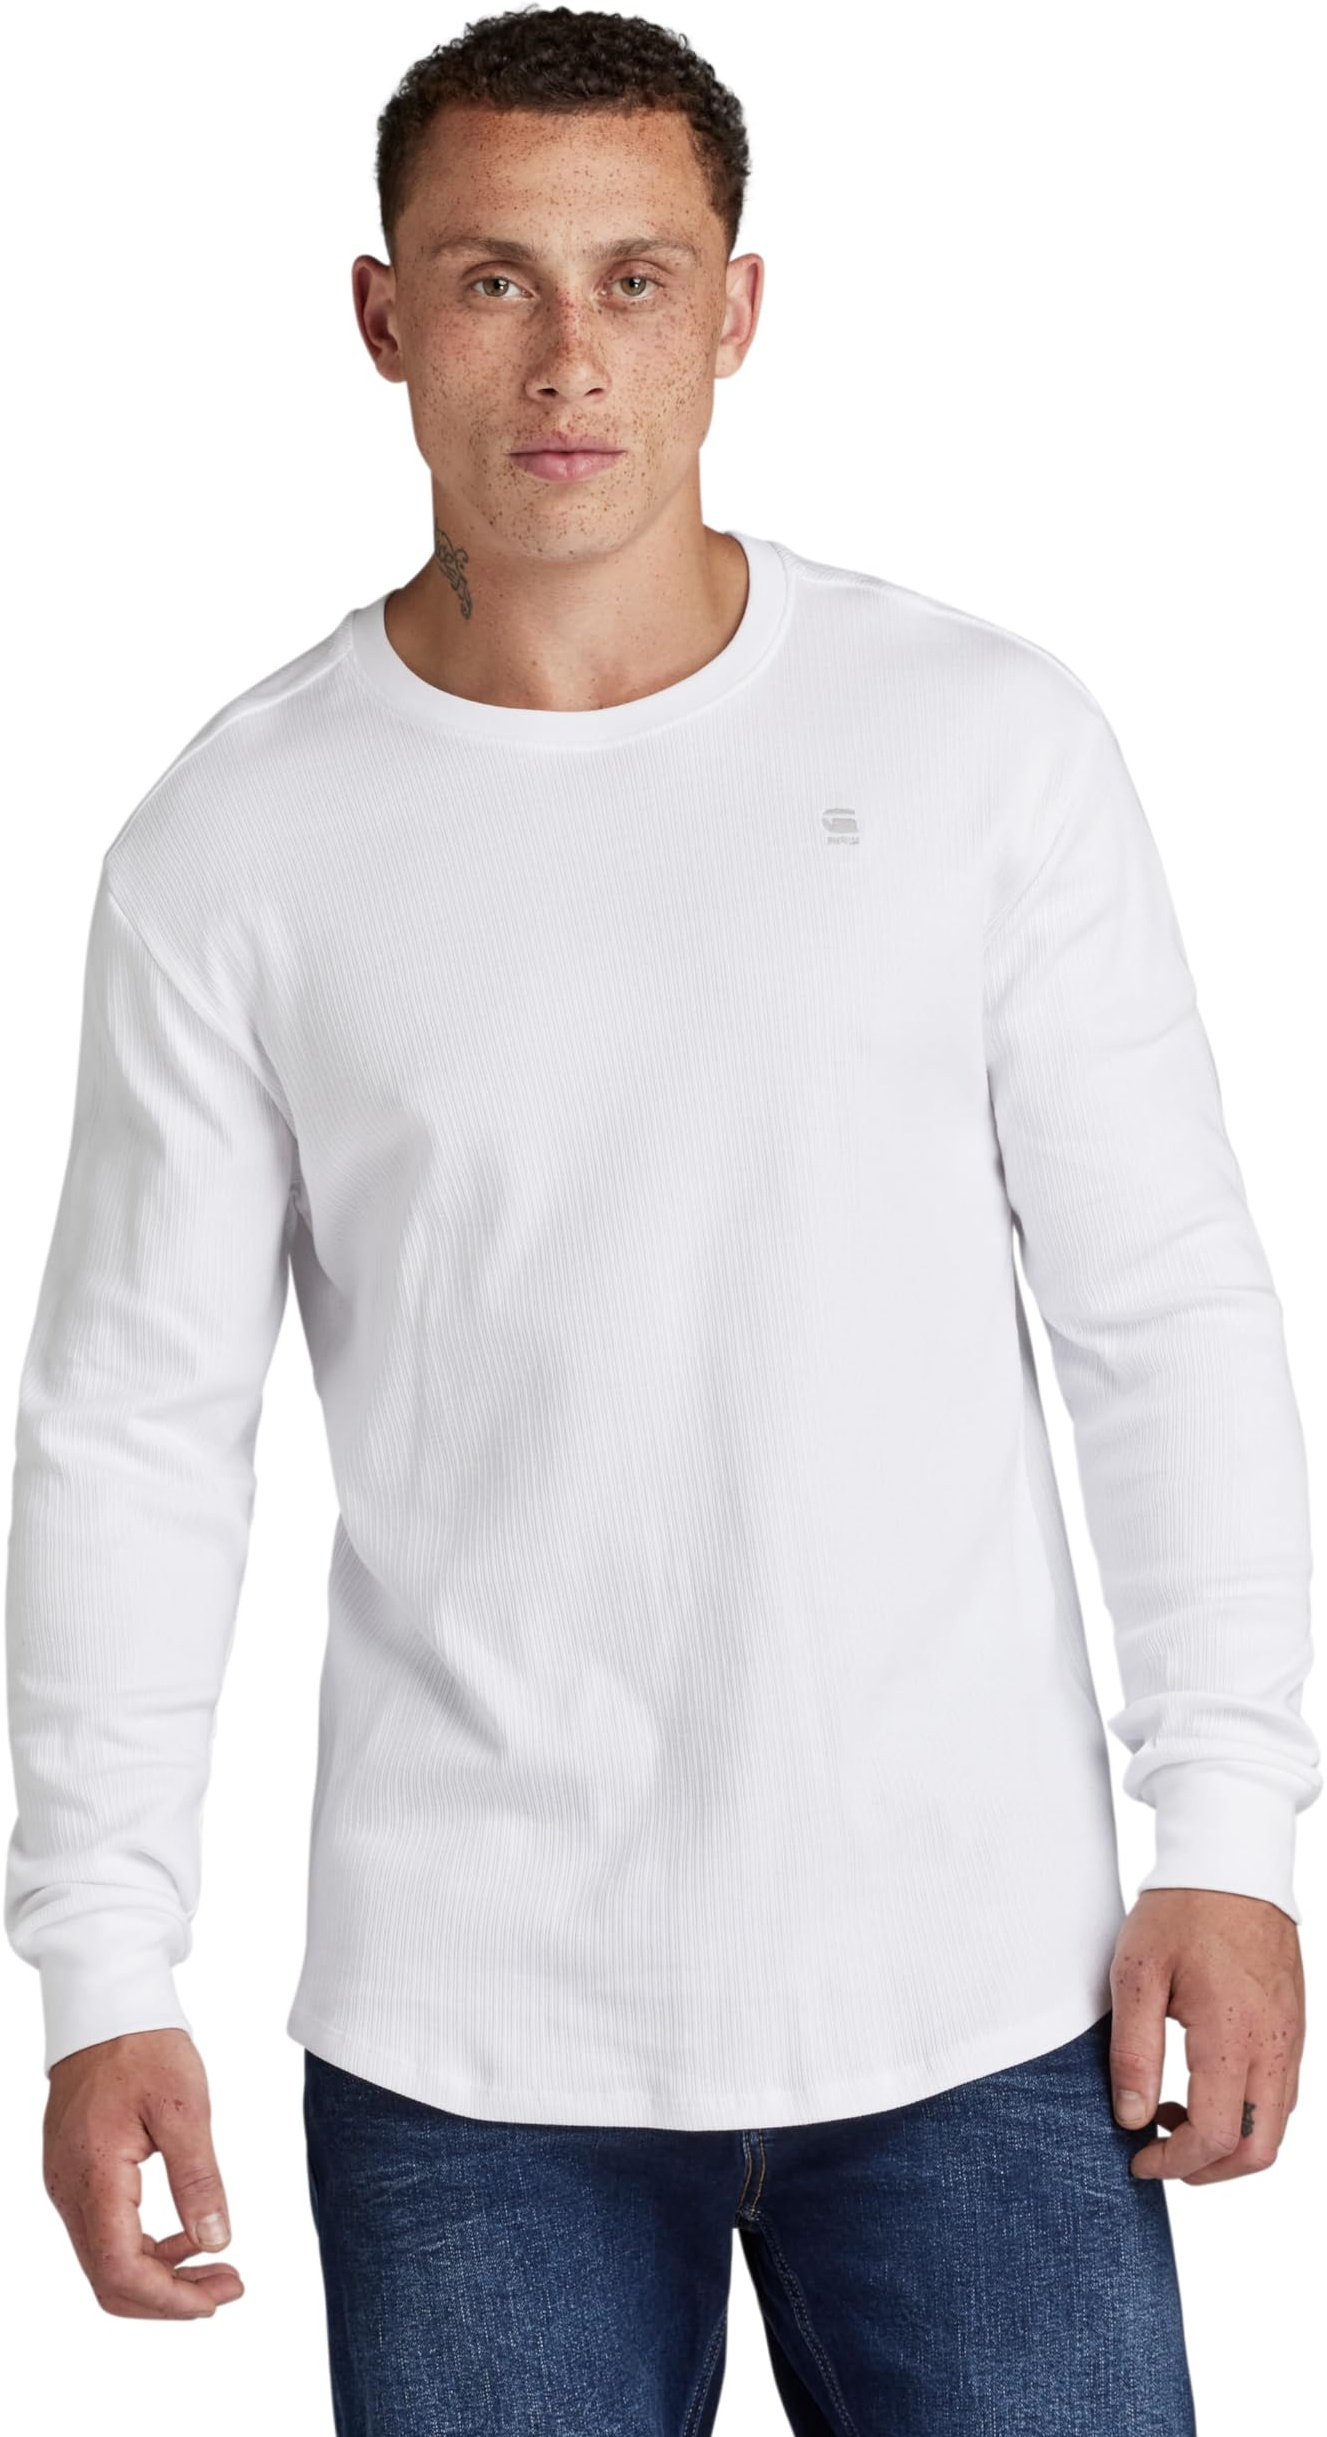 G-STAR RAW Herren Lash T-Shirt, Weiß (white D16397-D289-110), L